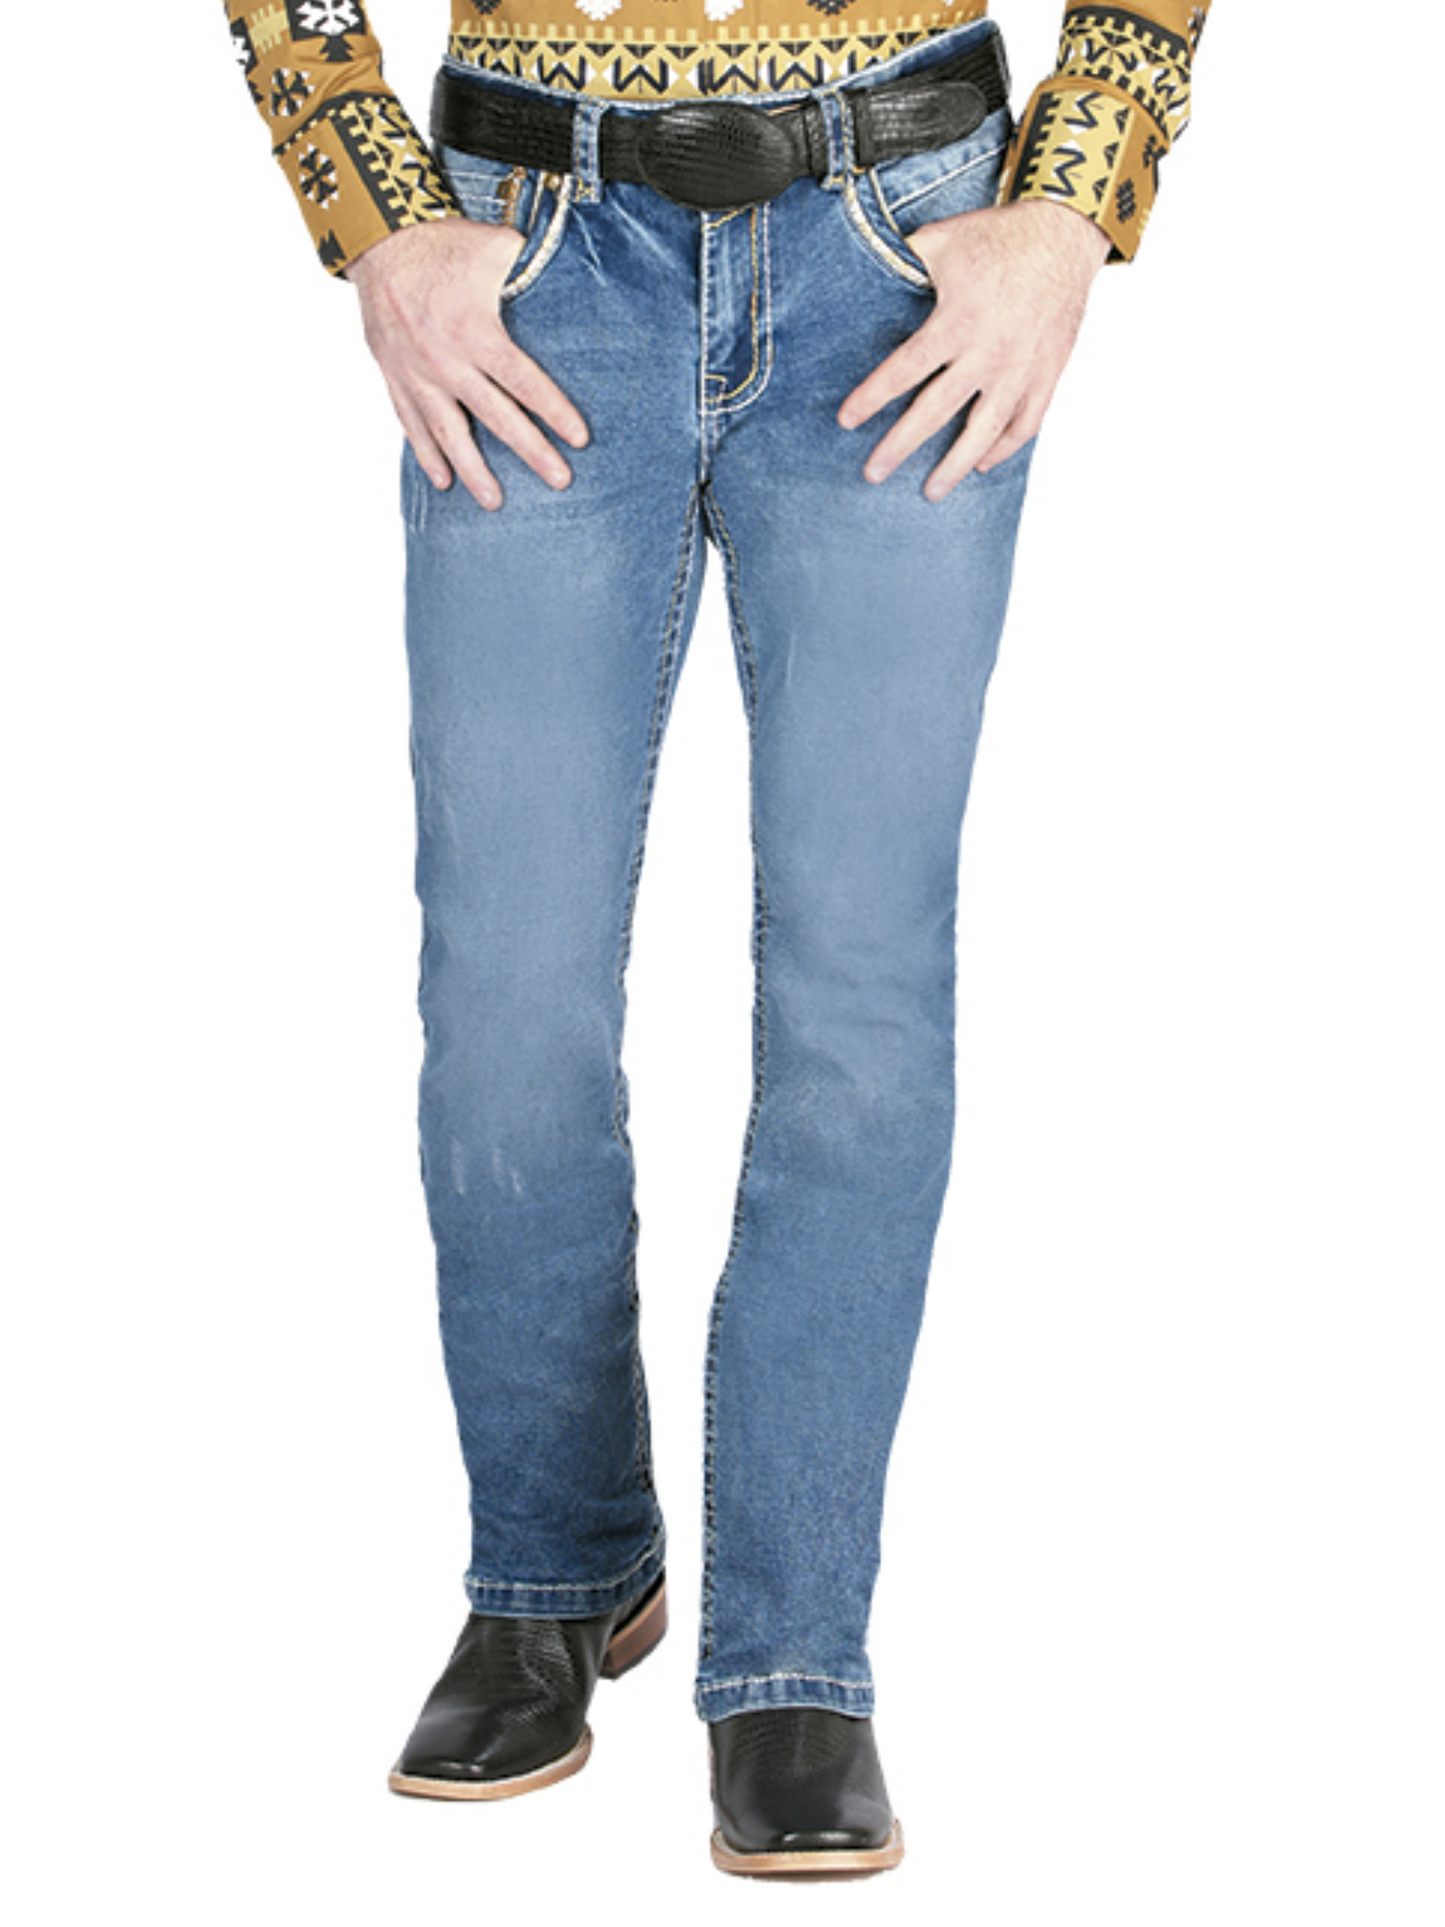 Pantalon Vaquero de Mezclilla Boot Cut Azul Claro para Hombre 'Centenario' - ID: 44839 Denim Jeans Centenario 